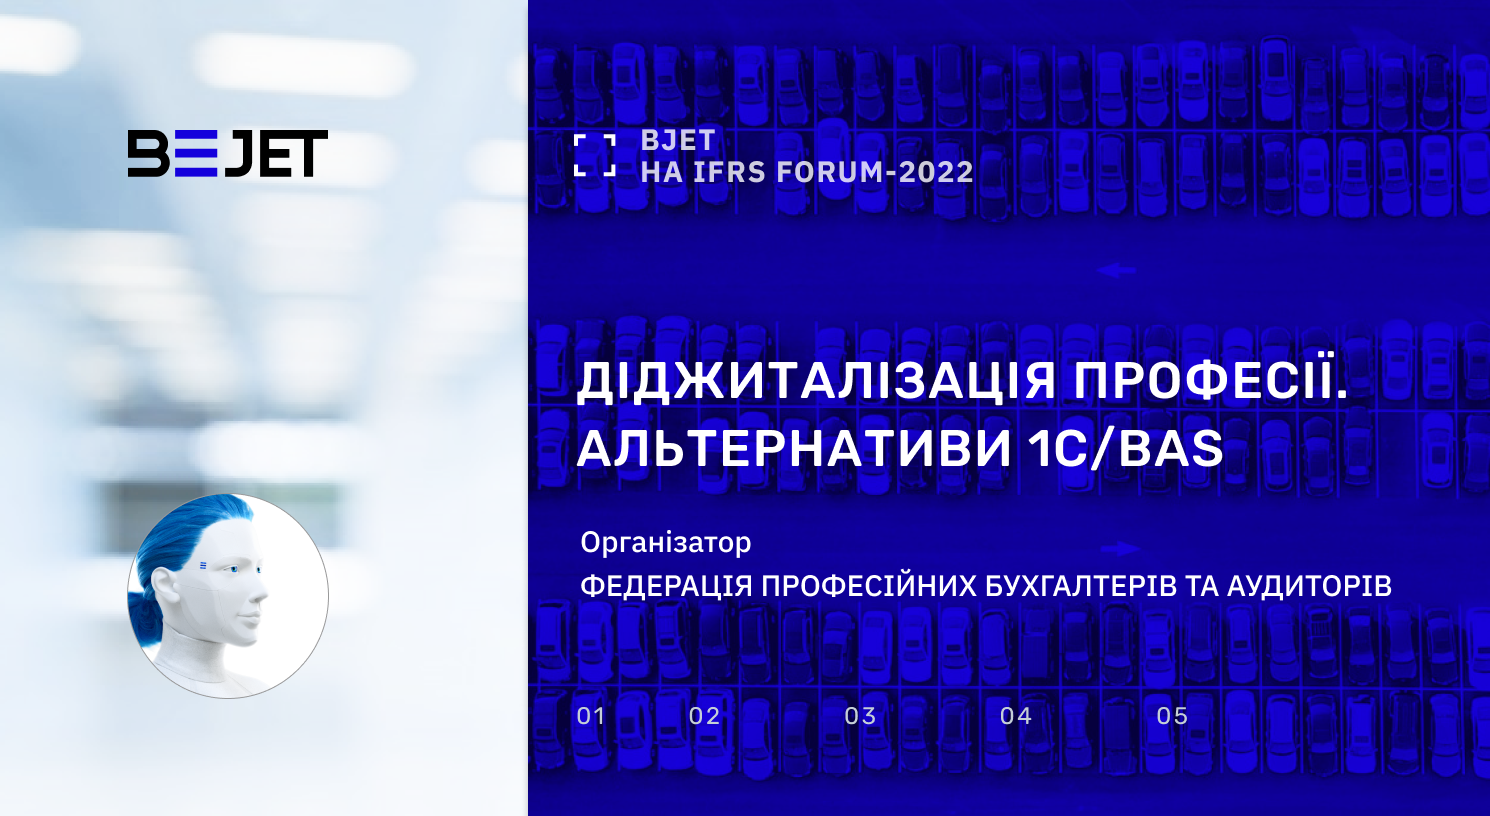 BJet на IFRS Forum-2022